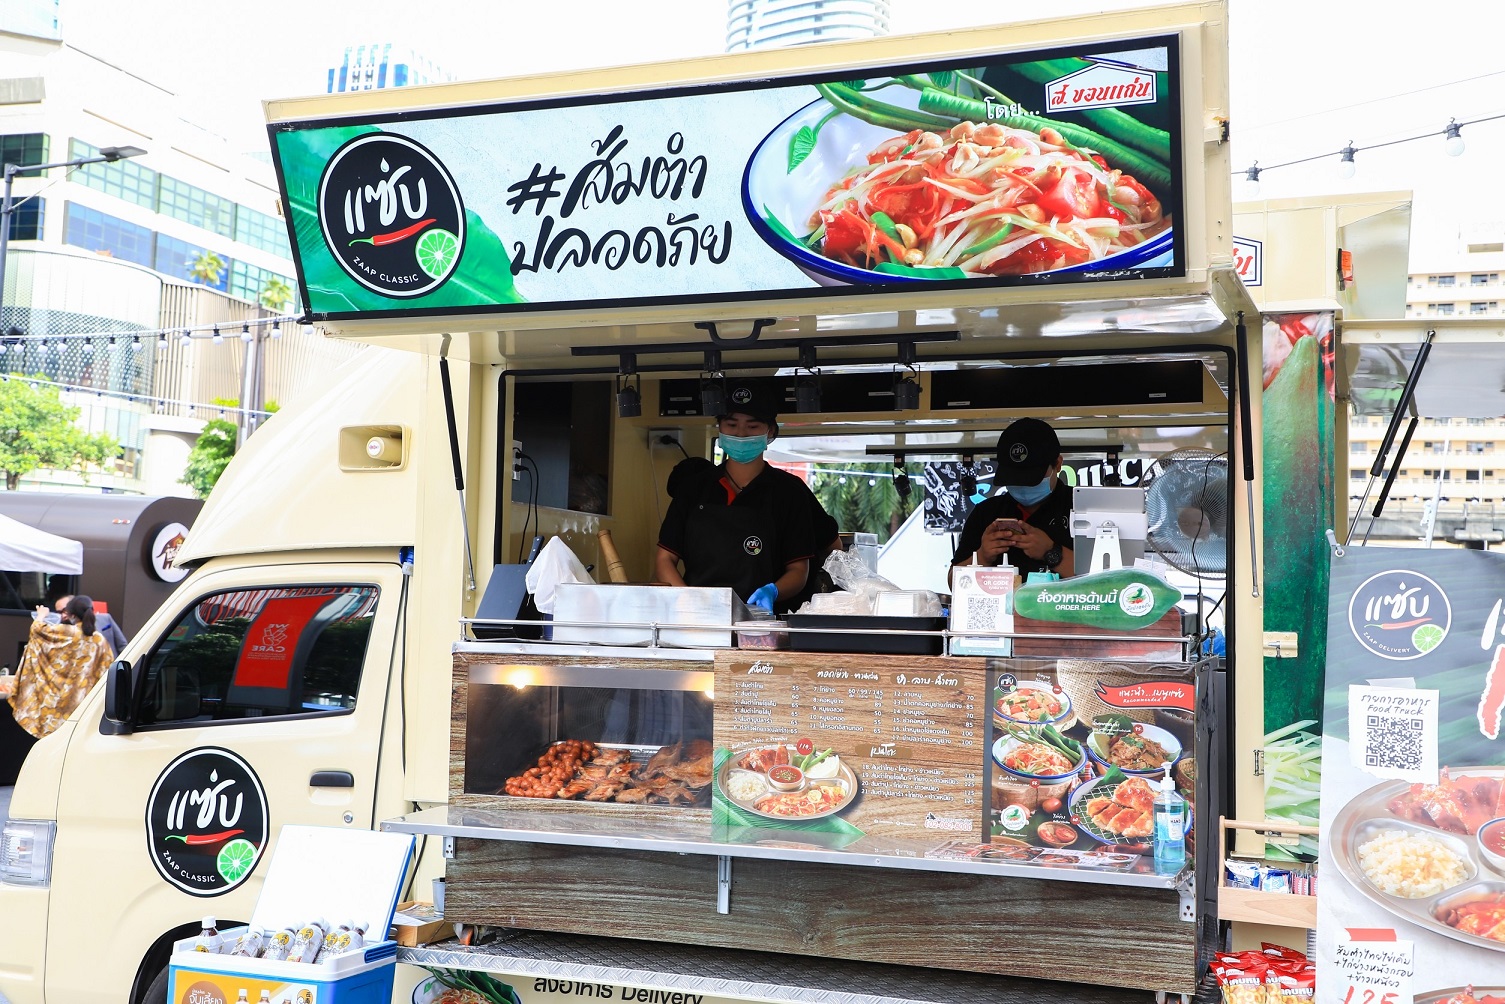 เซ็นทรัลพัฒนา เปิดพื้นที่จัดงาน Food Truck Caravan by We Chef x Streamline Thailand